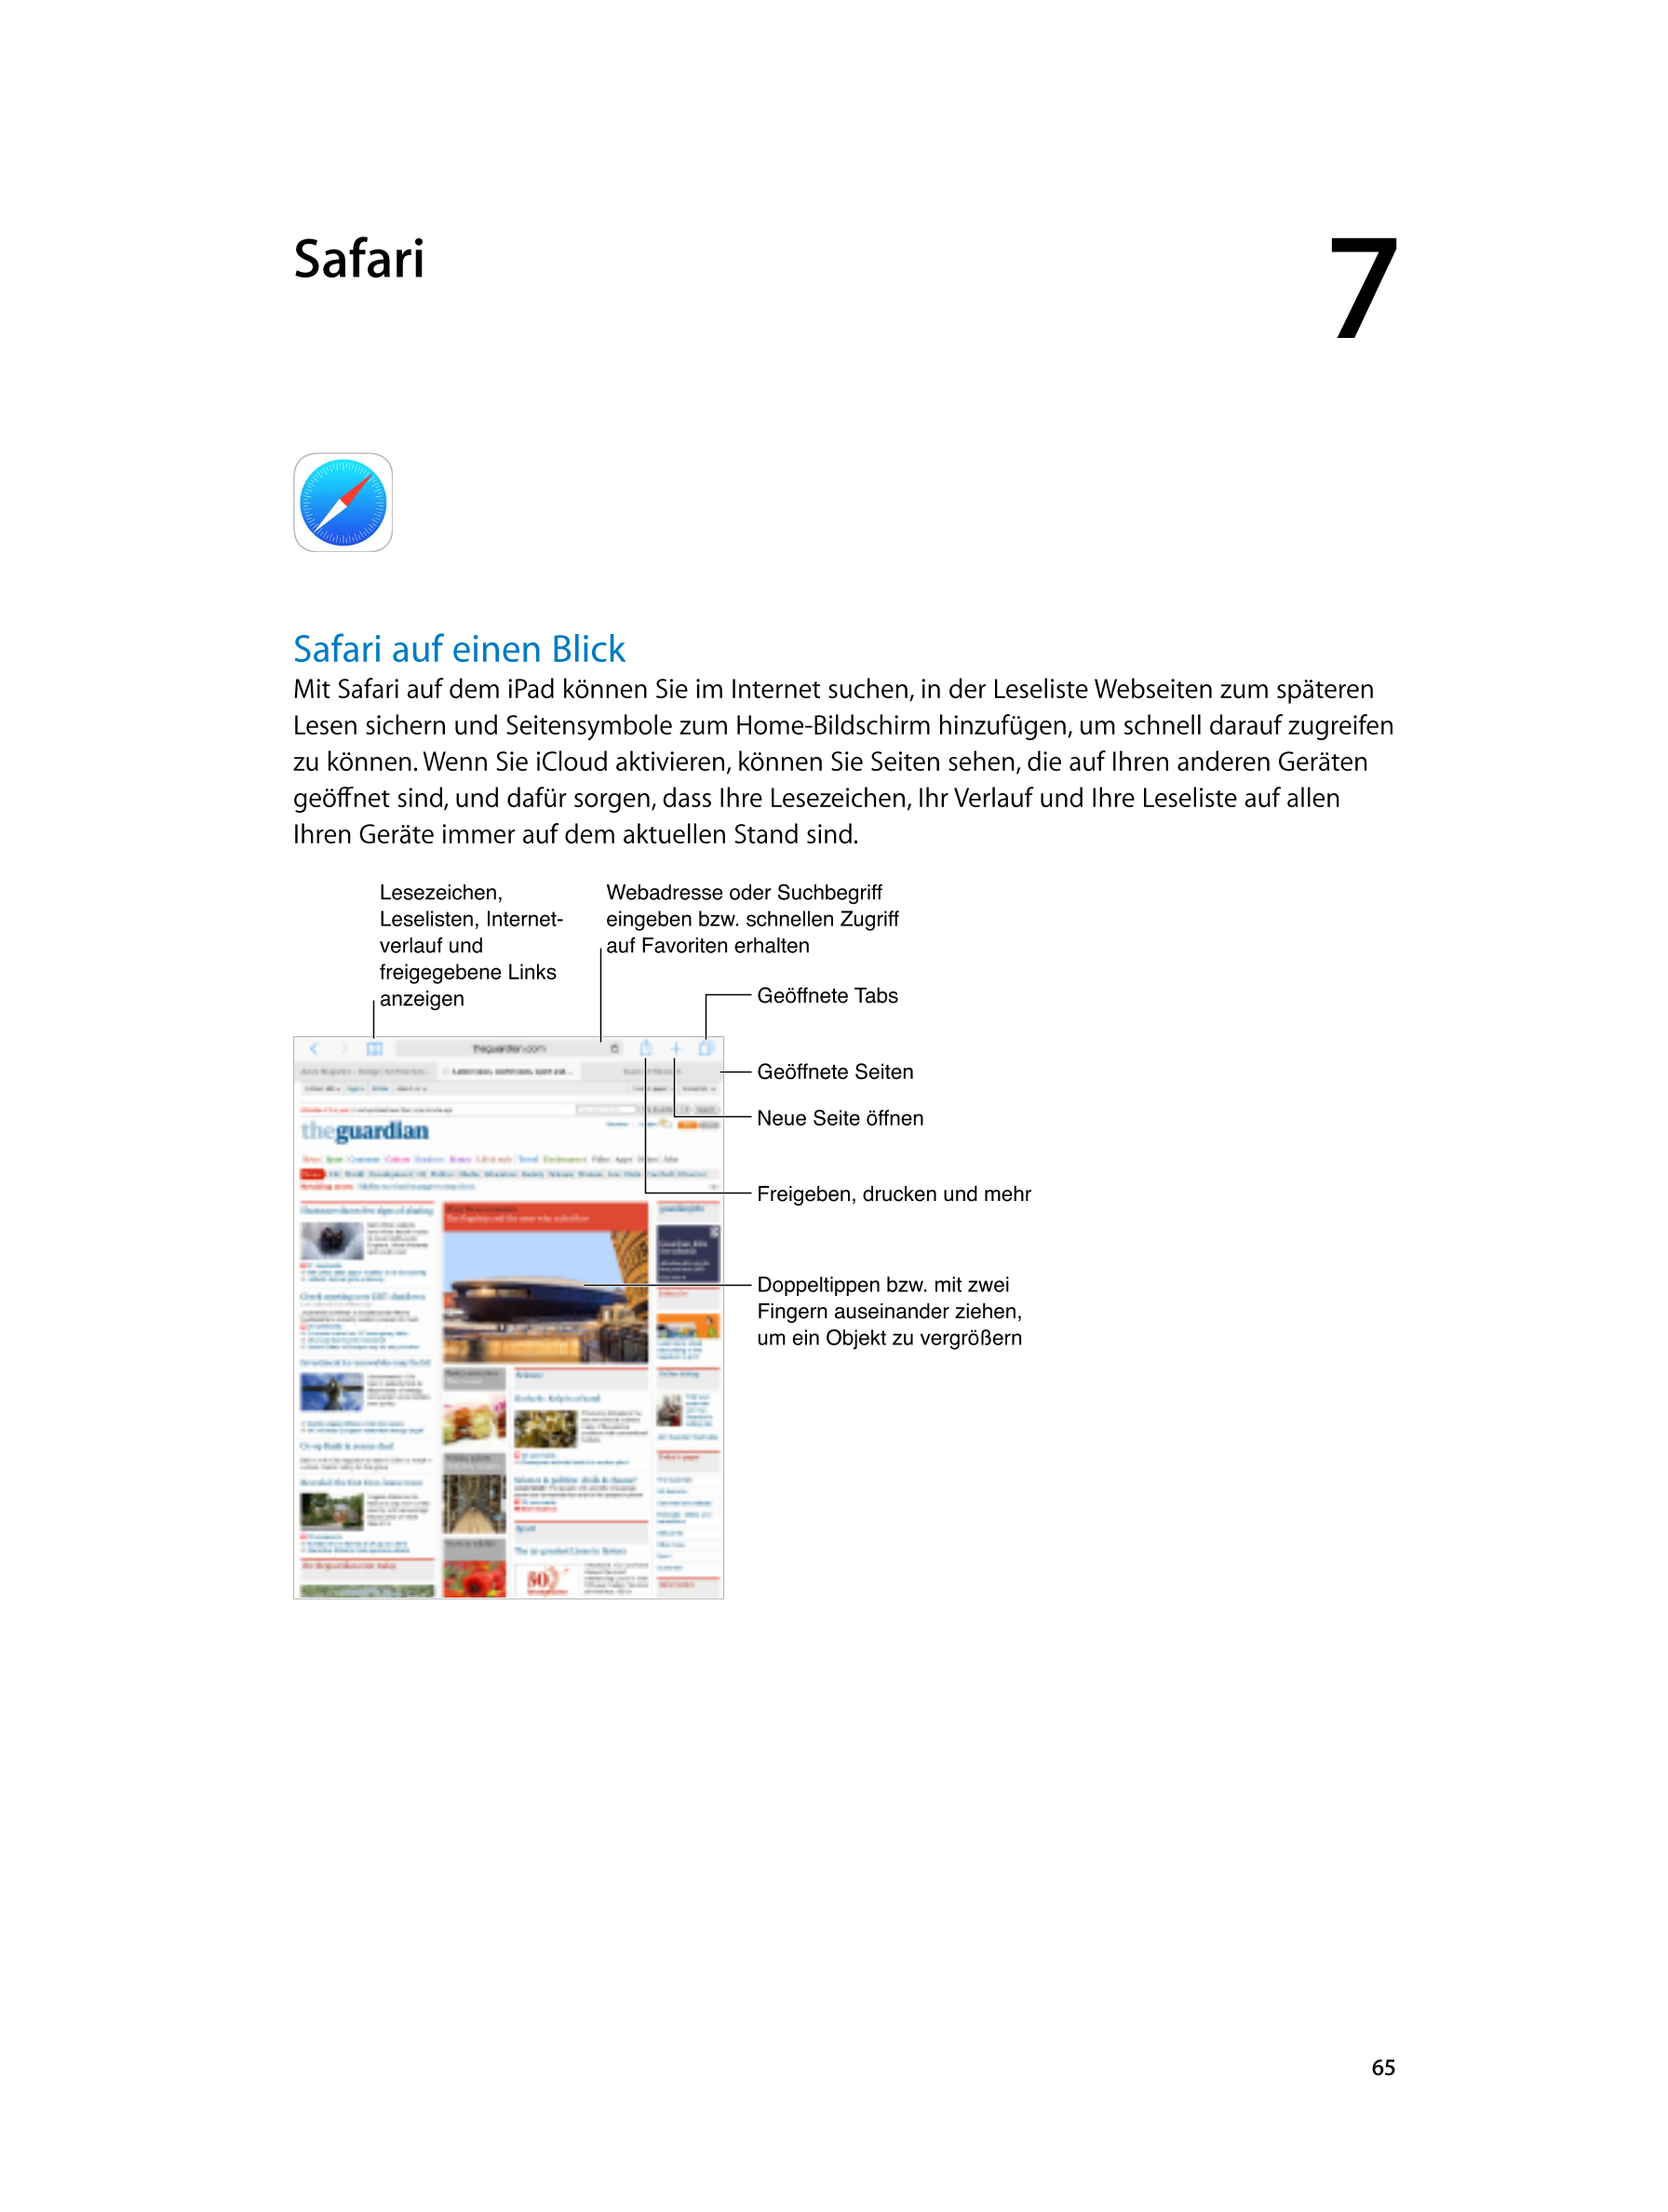  Safari 7  
Safari auf einen Blick
Mit Safari auf dem iPad können Sie im Internet suchen, in der Leseliste Webseiten zum spätere